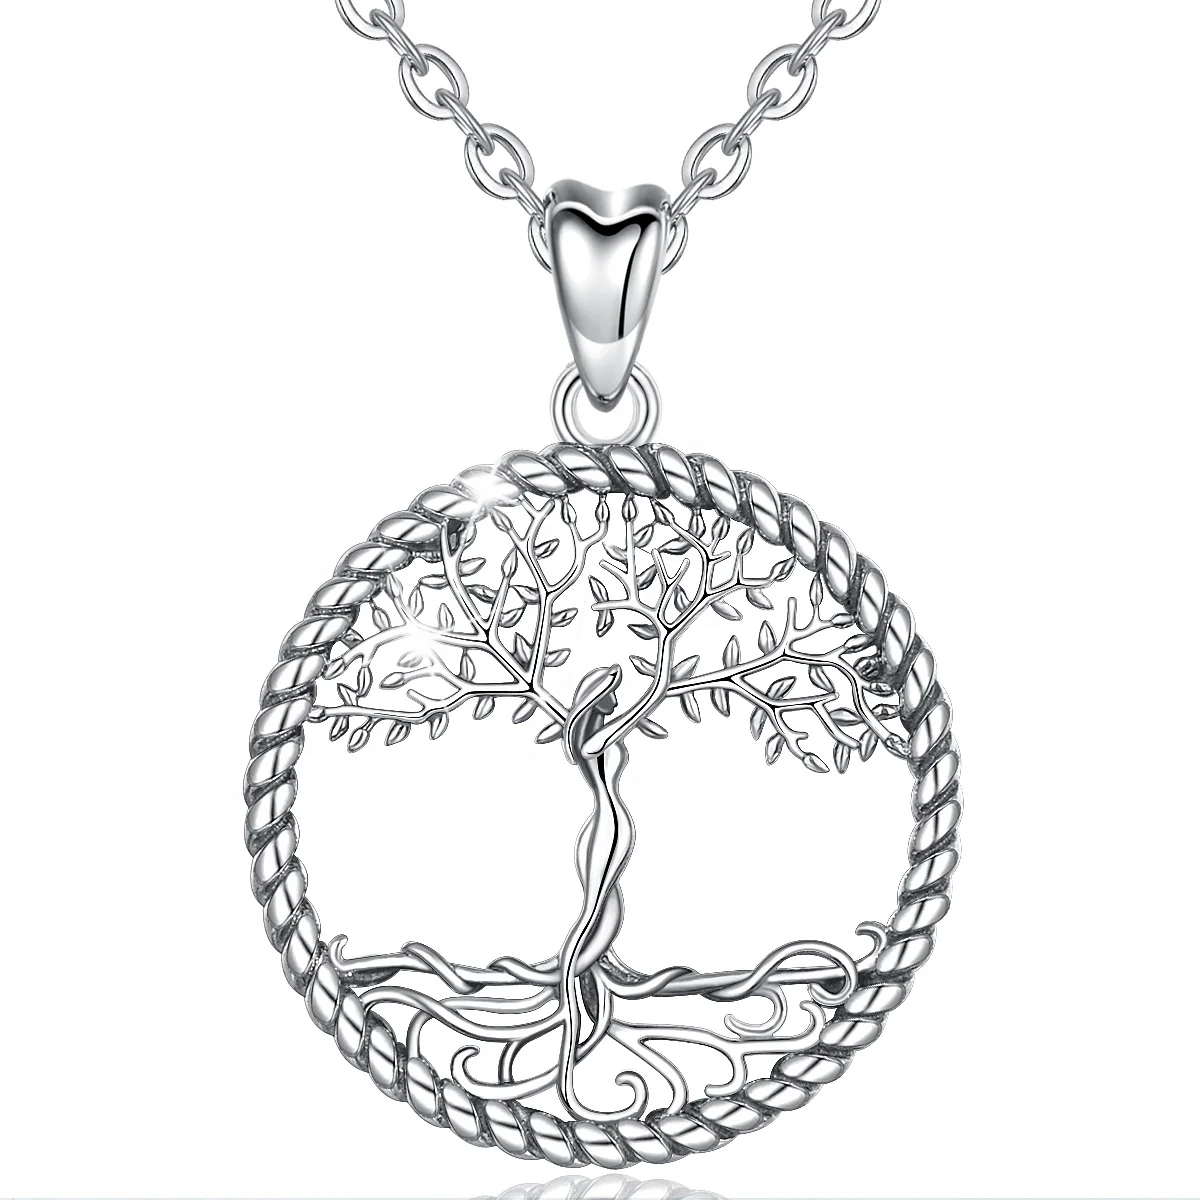 Merryshine Lucky изготовленный на заказ 925 стерлингового серебра Древо жизни кулон ожерелье для подруги для женщин